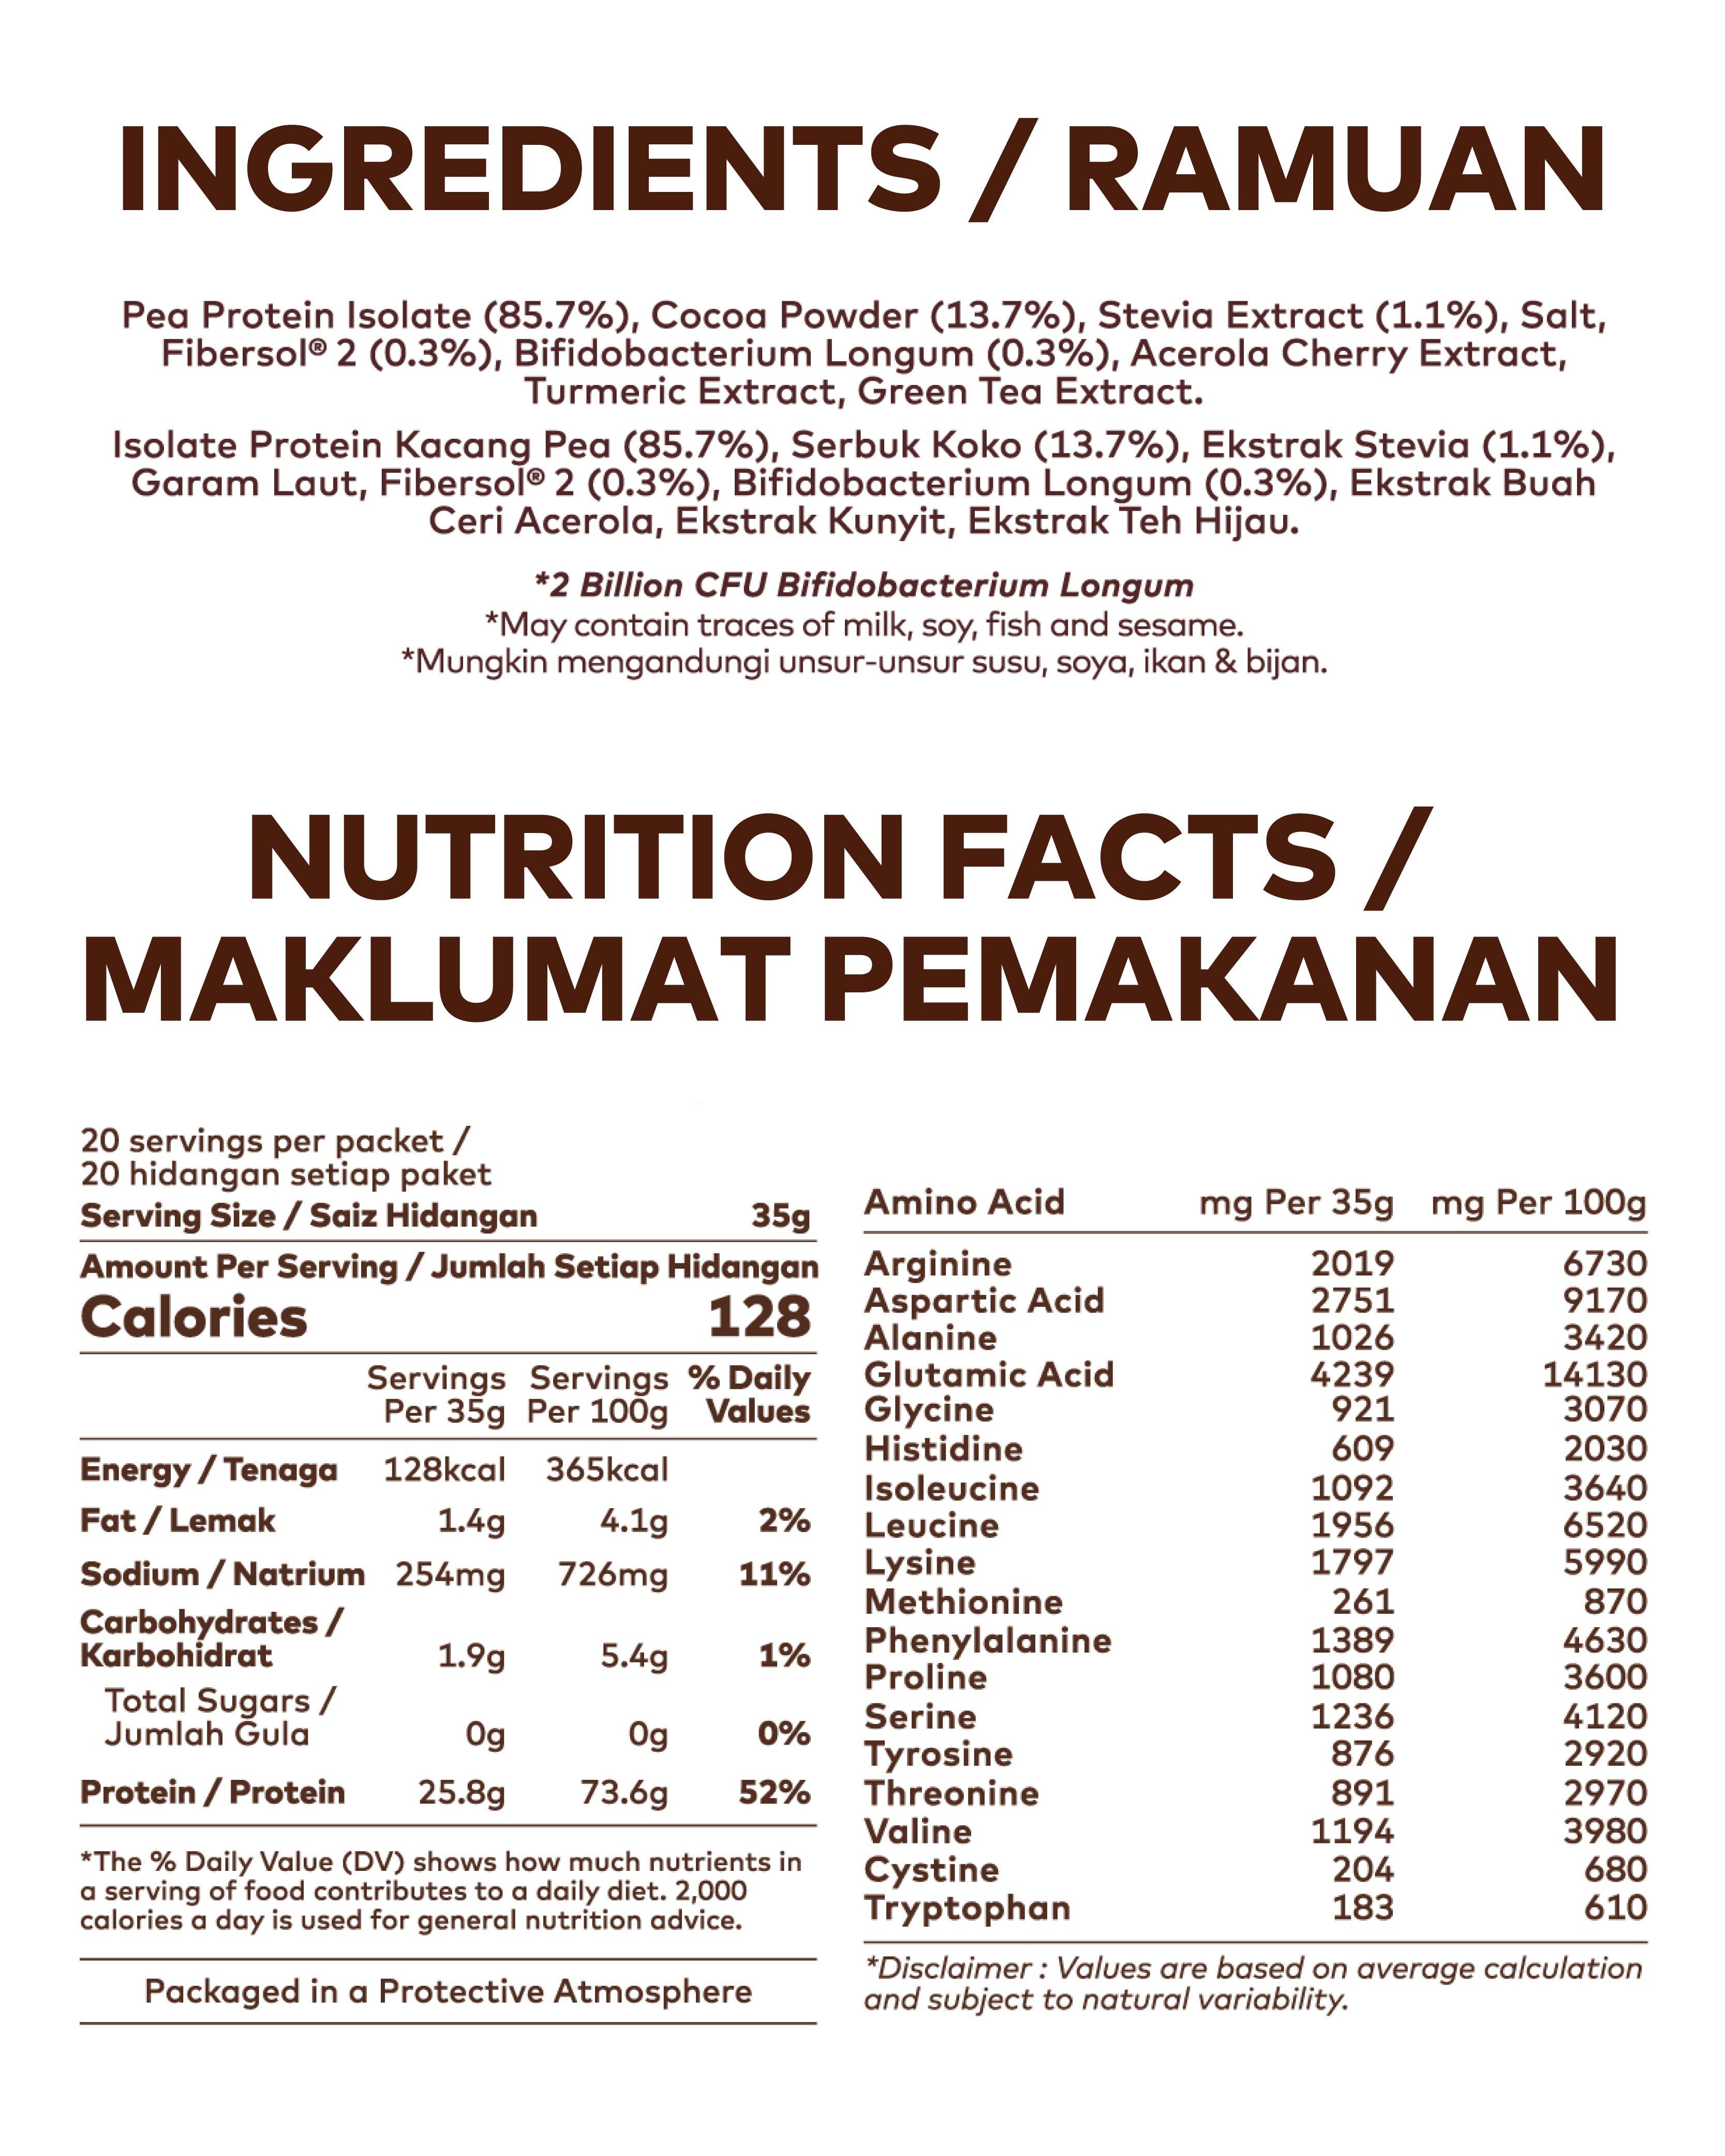 Choco-holic Protein Blend (700g) - Amazin' Graze Malaysia